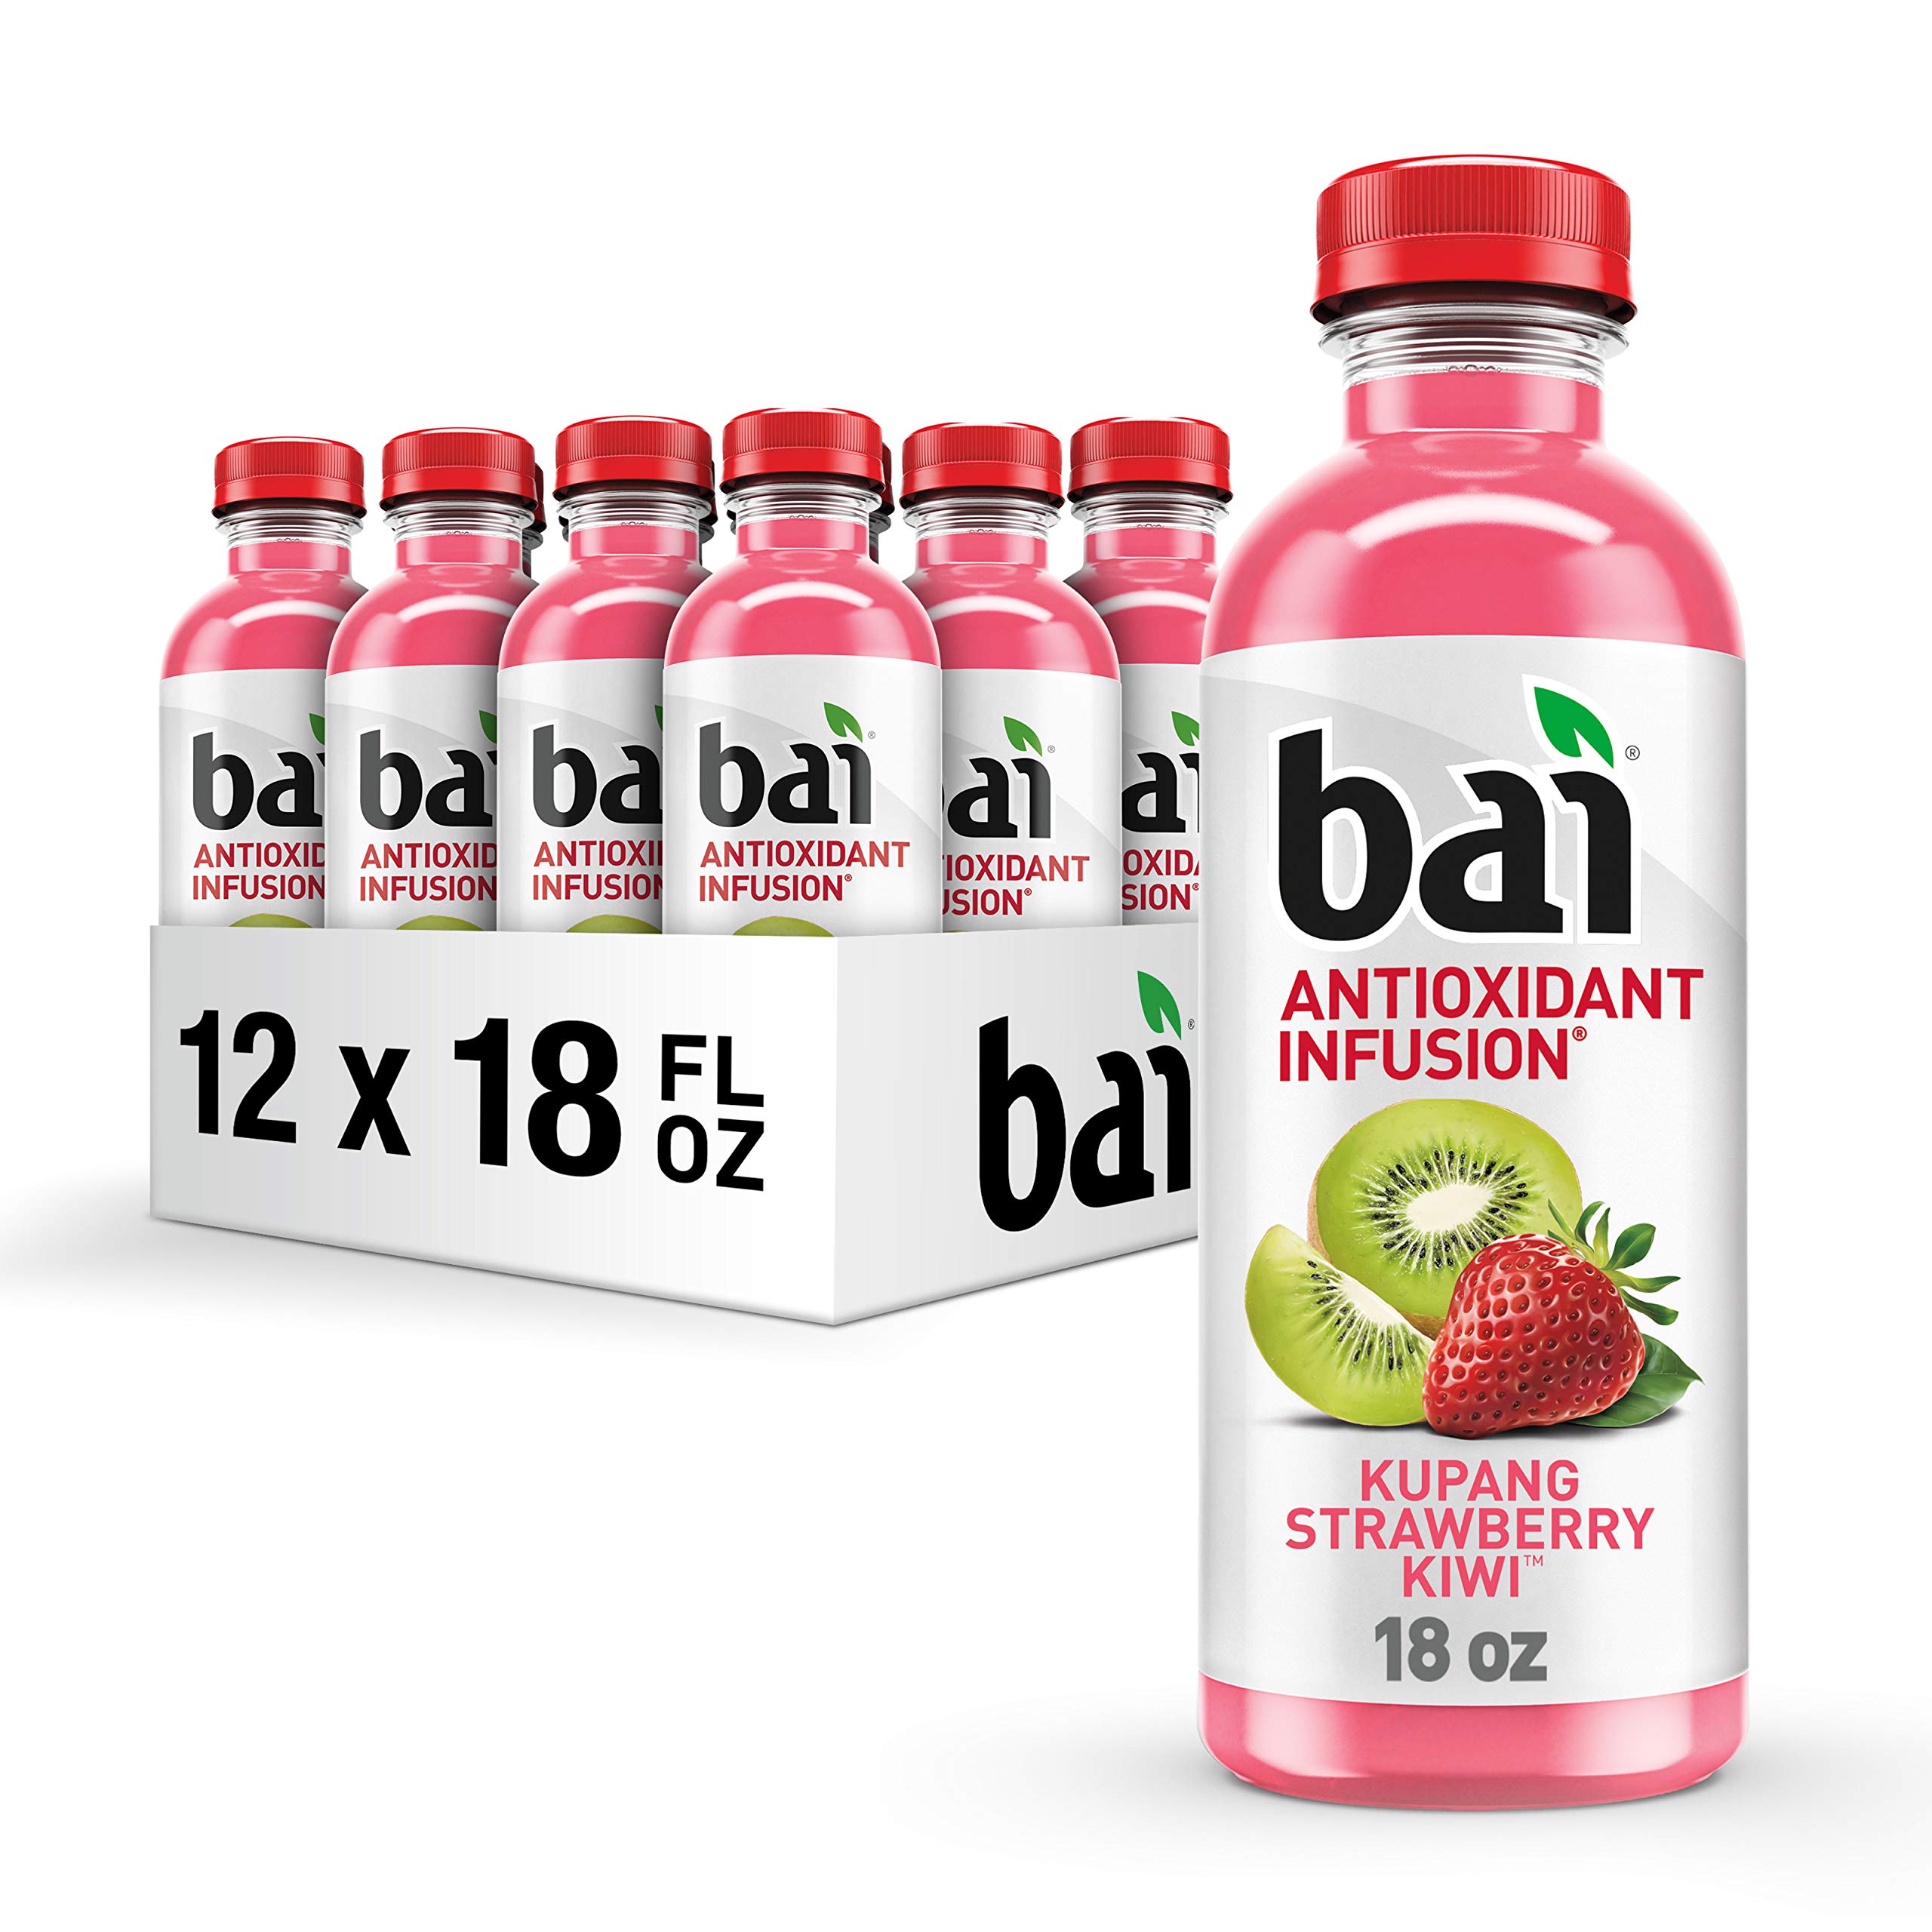 Bai Kupang Strawberry Kiwi, Antioxidant Infused Beverage, 18 fl oz